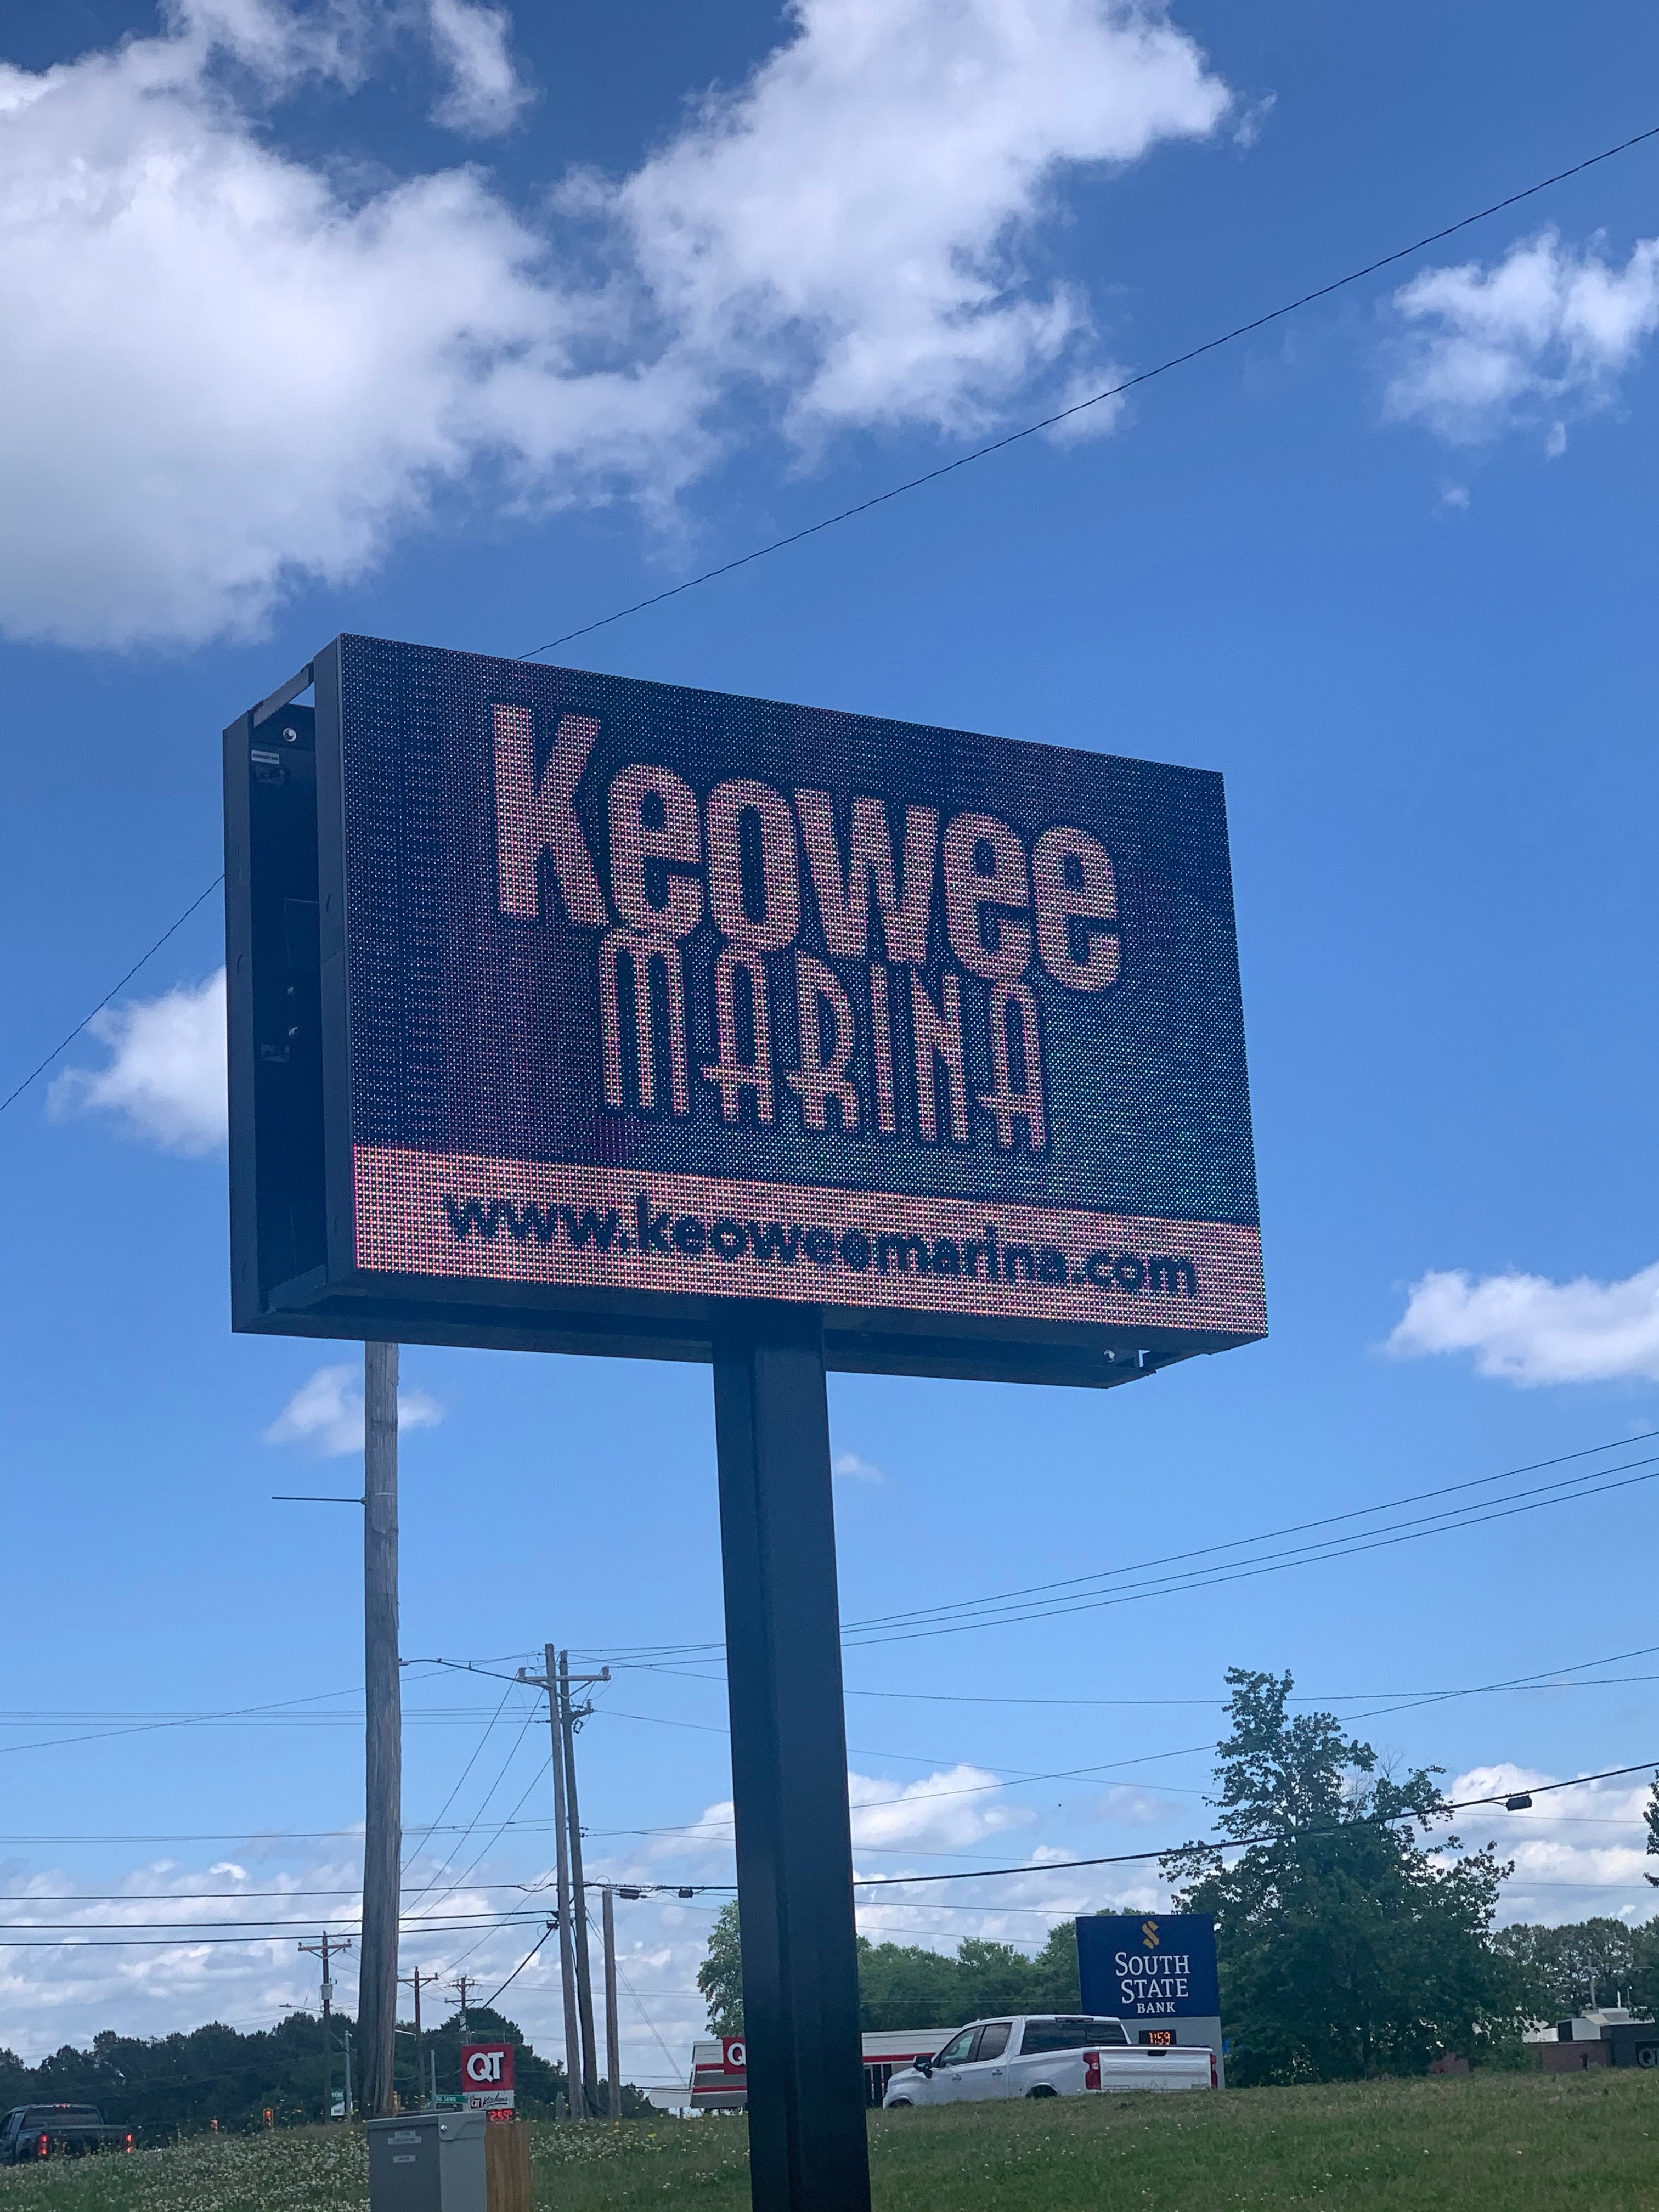 Keowee Marina